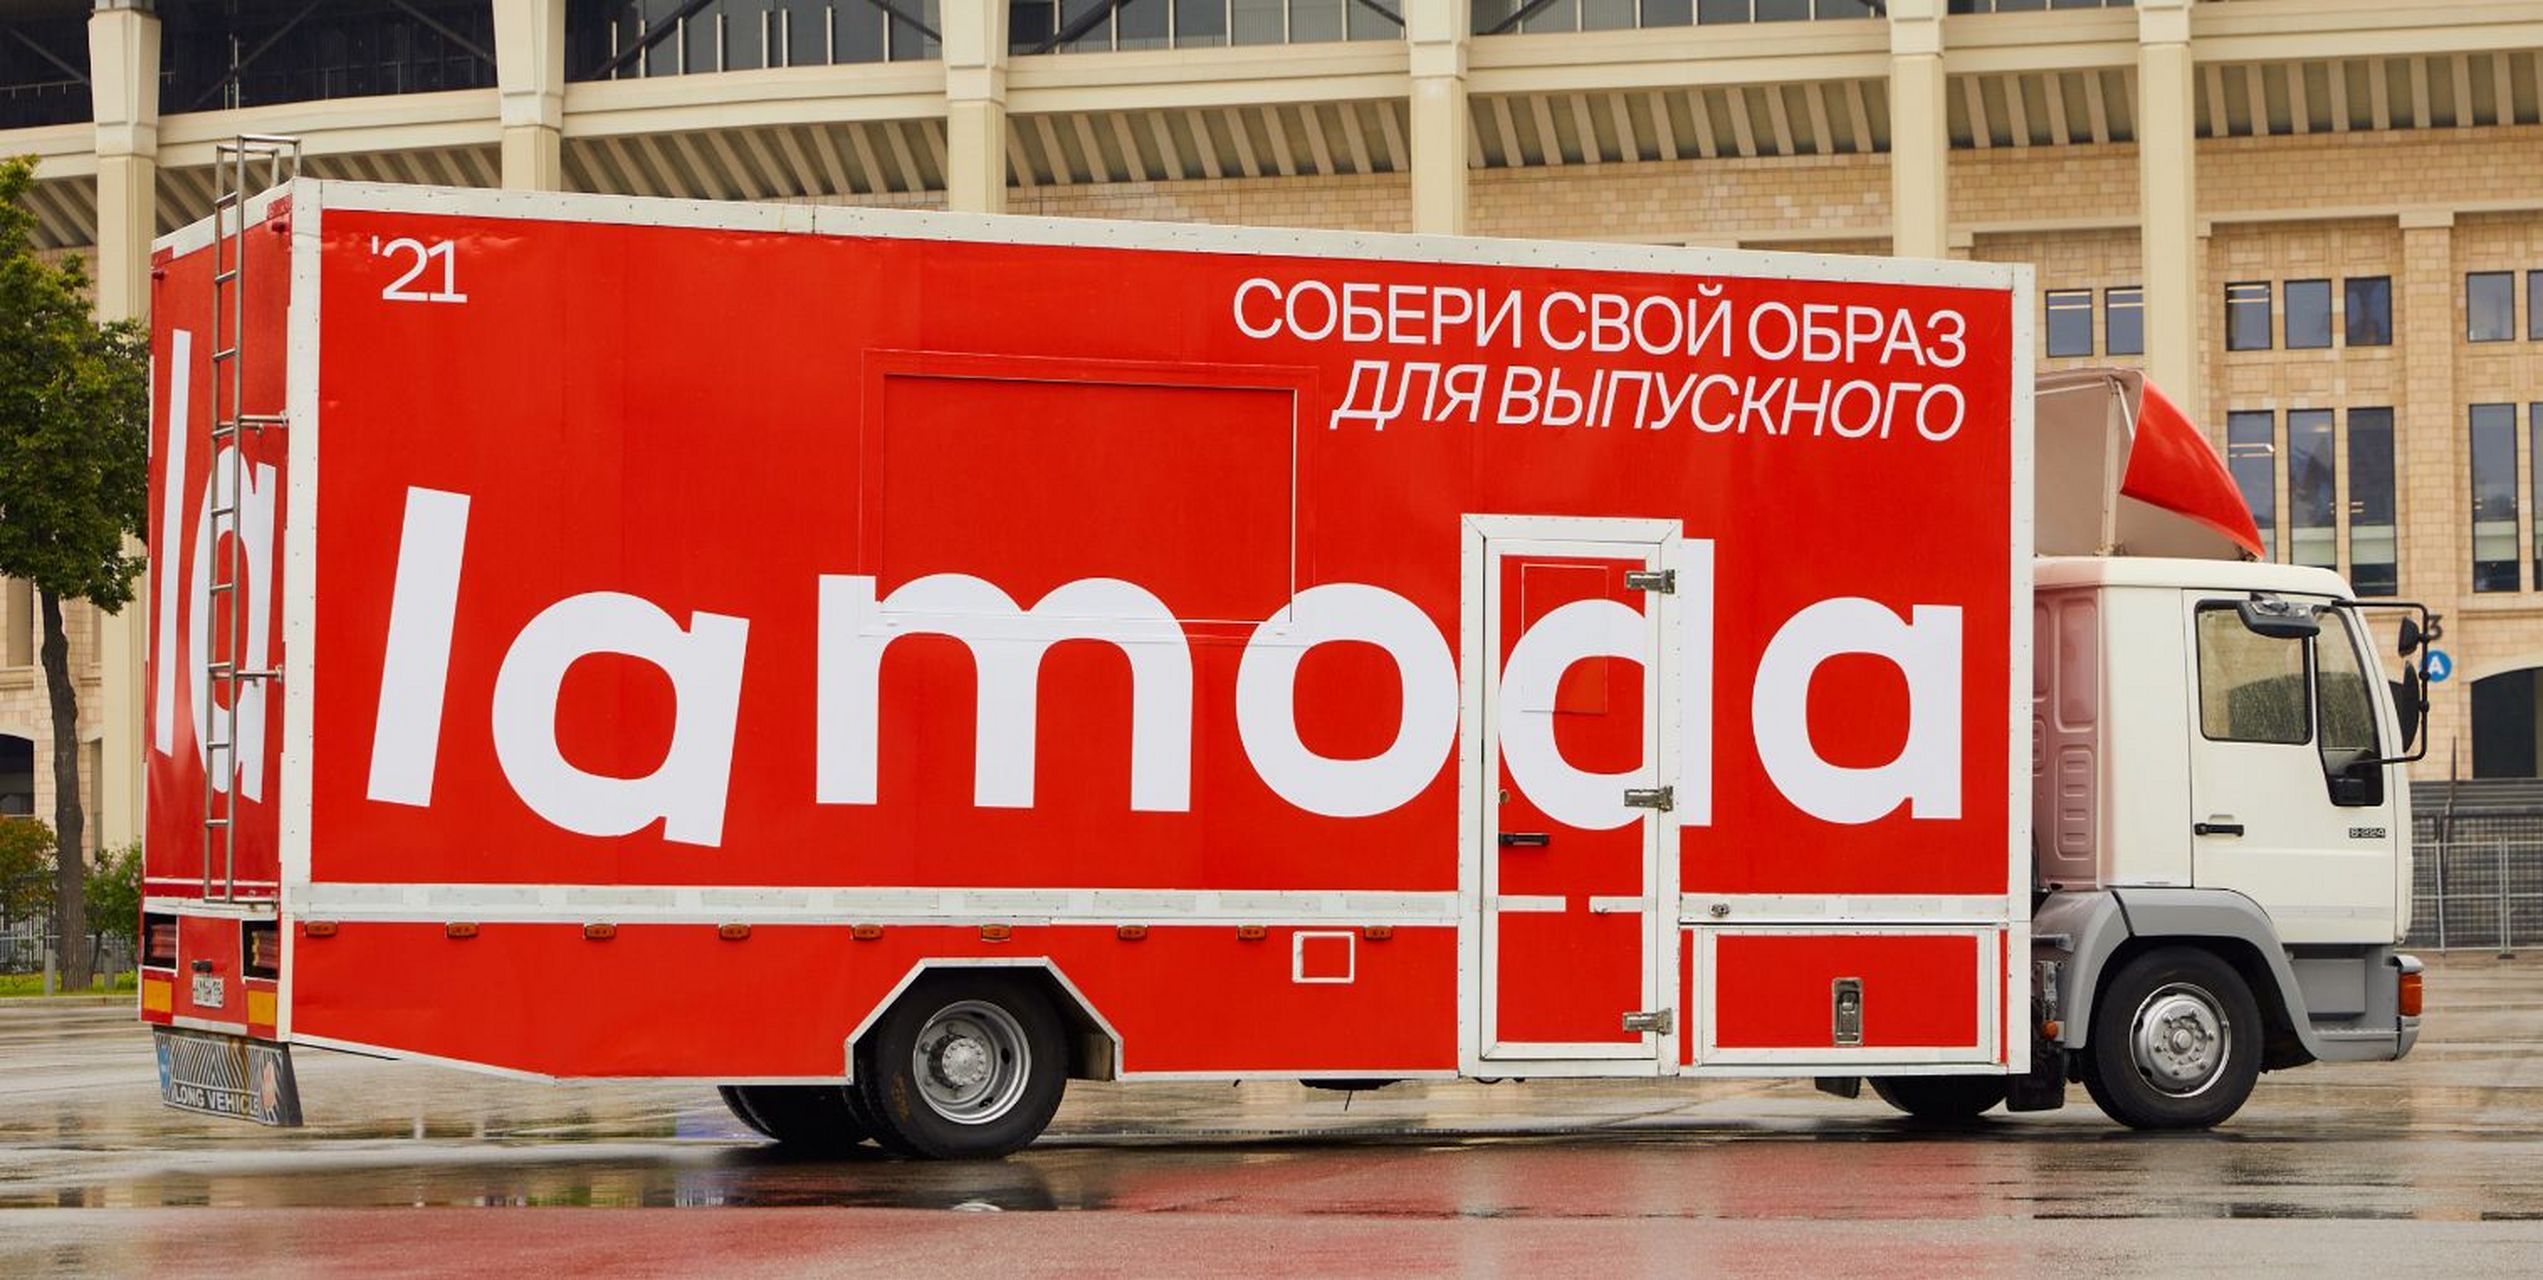 2022年lamoda上俄罗斯时尚品牌需求暴增!热门产品有这些!